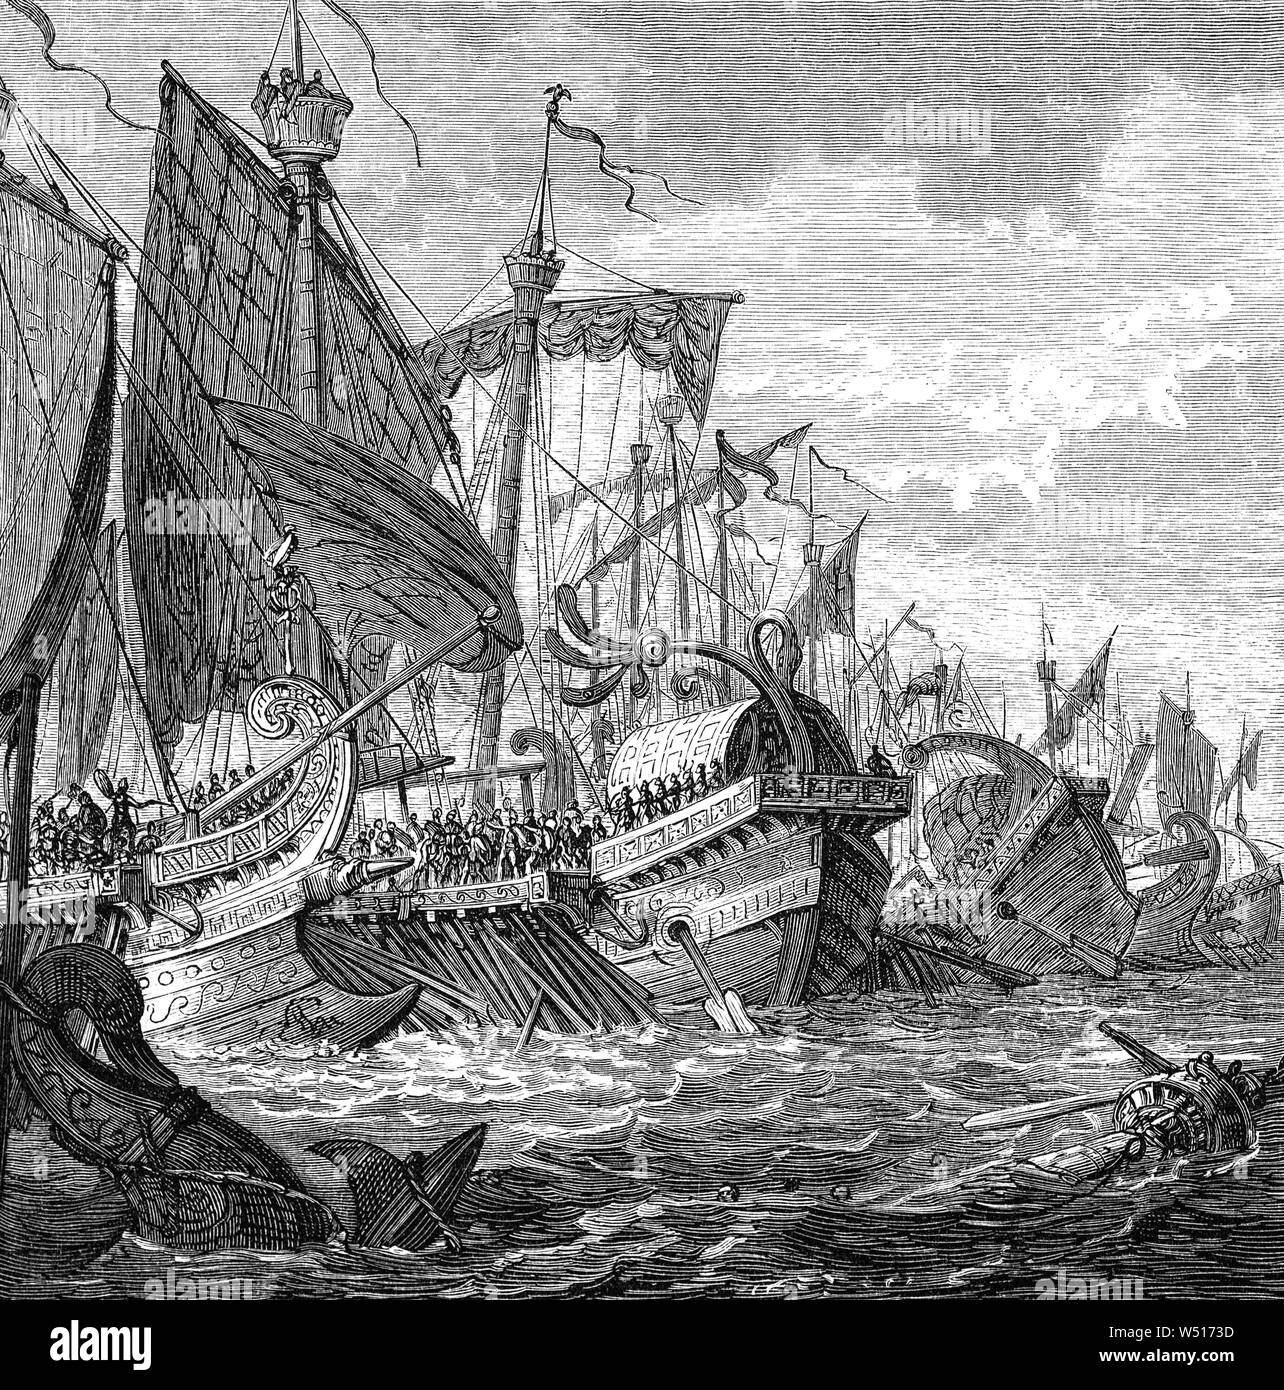 En 256 avant J.-C., au cours de la première guerre punique (264-241 avant J.-C.) L'une des plus grandes batailles navales de l'histoire a eu lieu au large du taximètre sur la côte de Sicile, Italie quand 330 navires romains antiques confrontés 350 navires Carthaginois. La lutte a été longue et beaucoup de vies ont été perdues. La lutte entre ces deux immenses pouvoirs antiques est aujourd'hui connu sous le nom de la bataille du cap Ecnomus,a finalement été remporté par les Romains. Banque D'Images